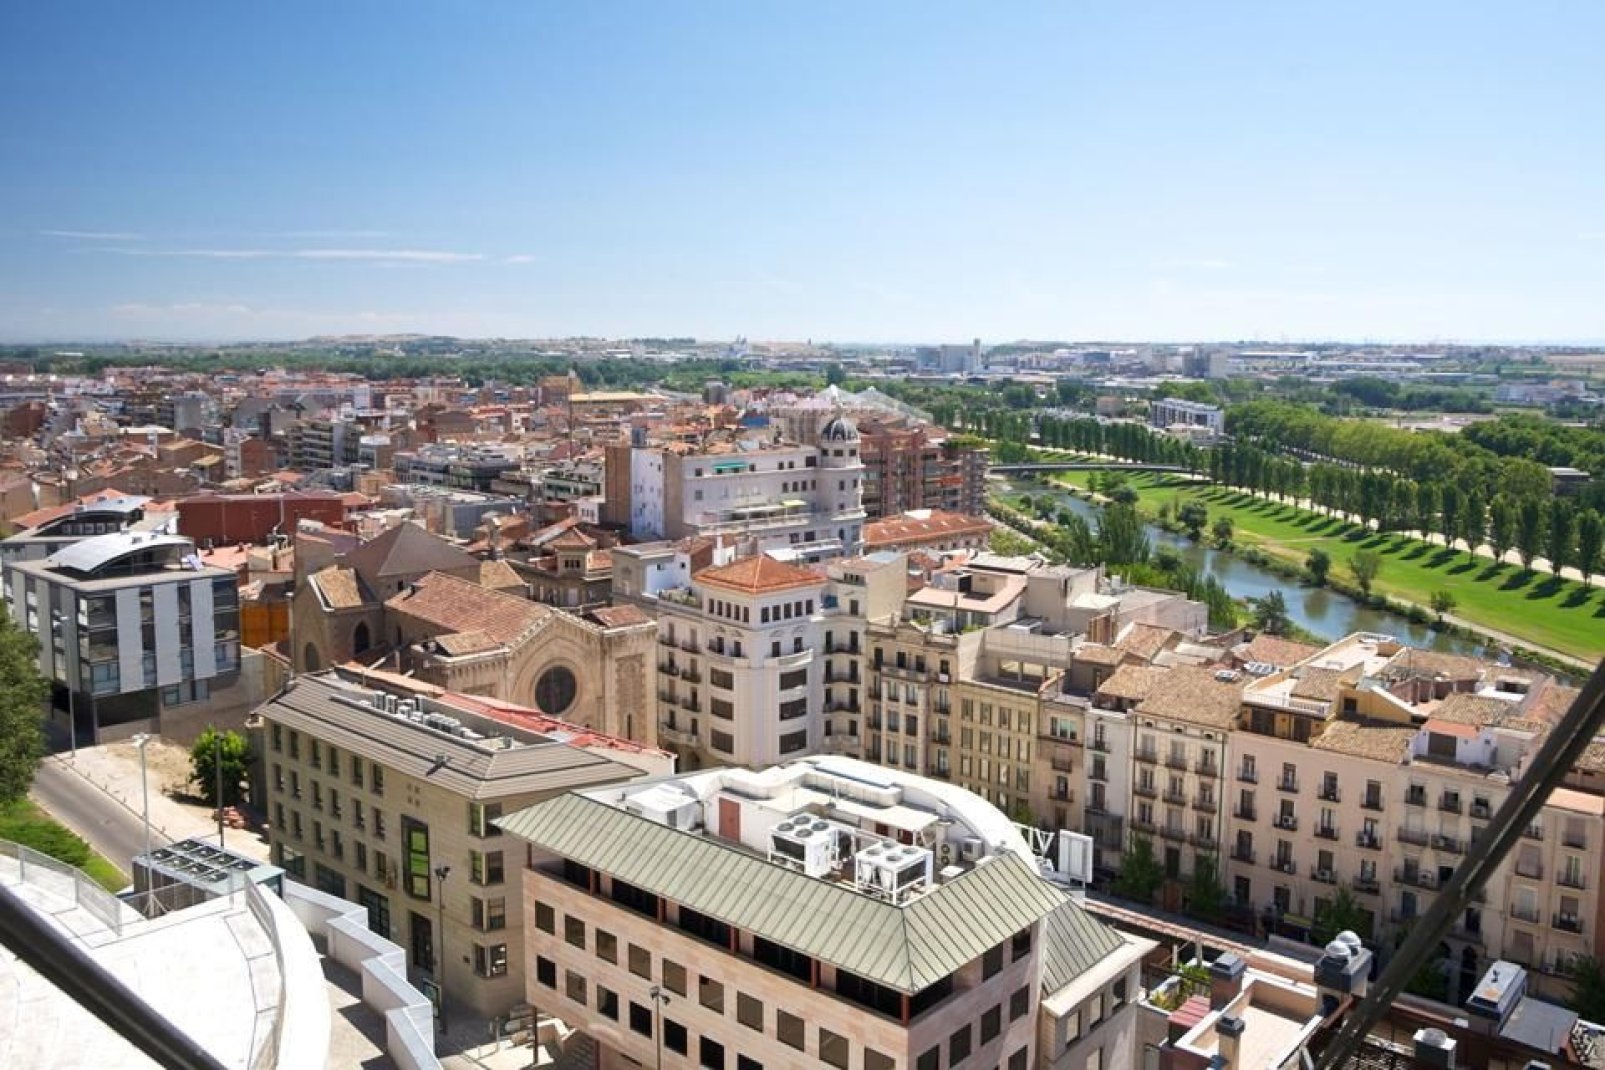 La città di Lleida vive prevalentemente di agricoltura e di produzione tessile e chimica.